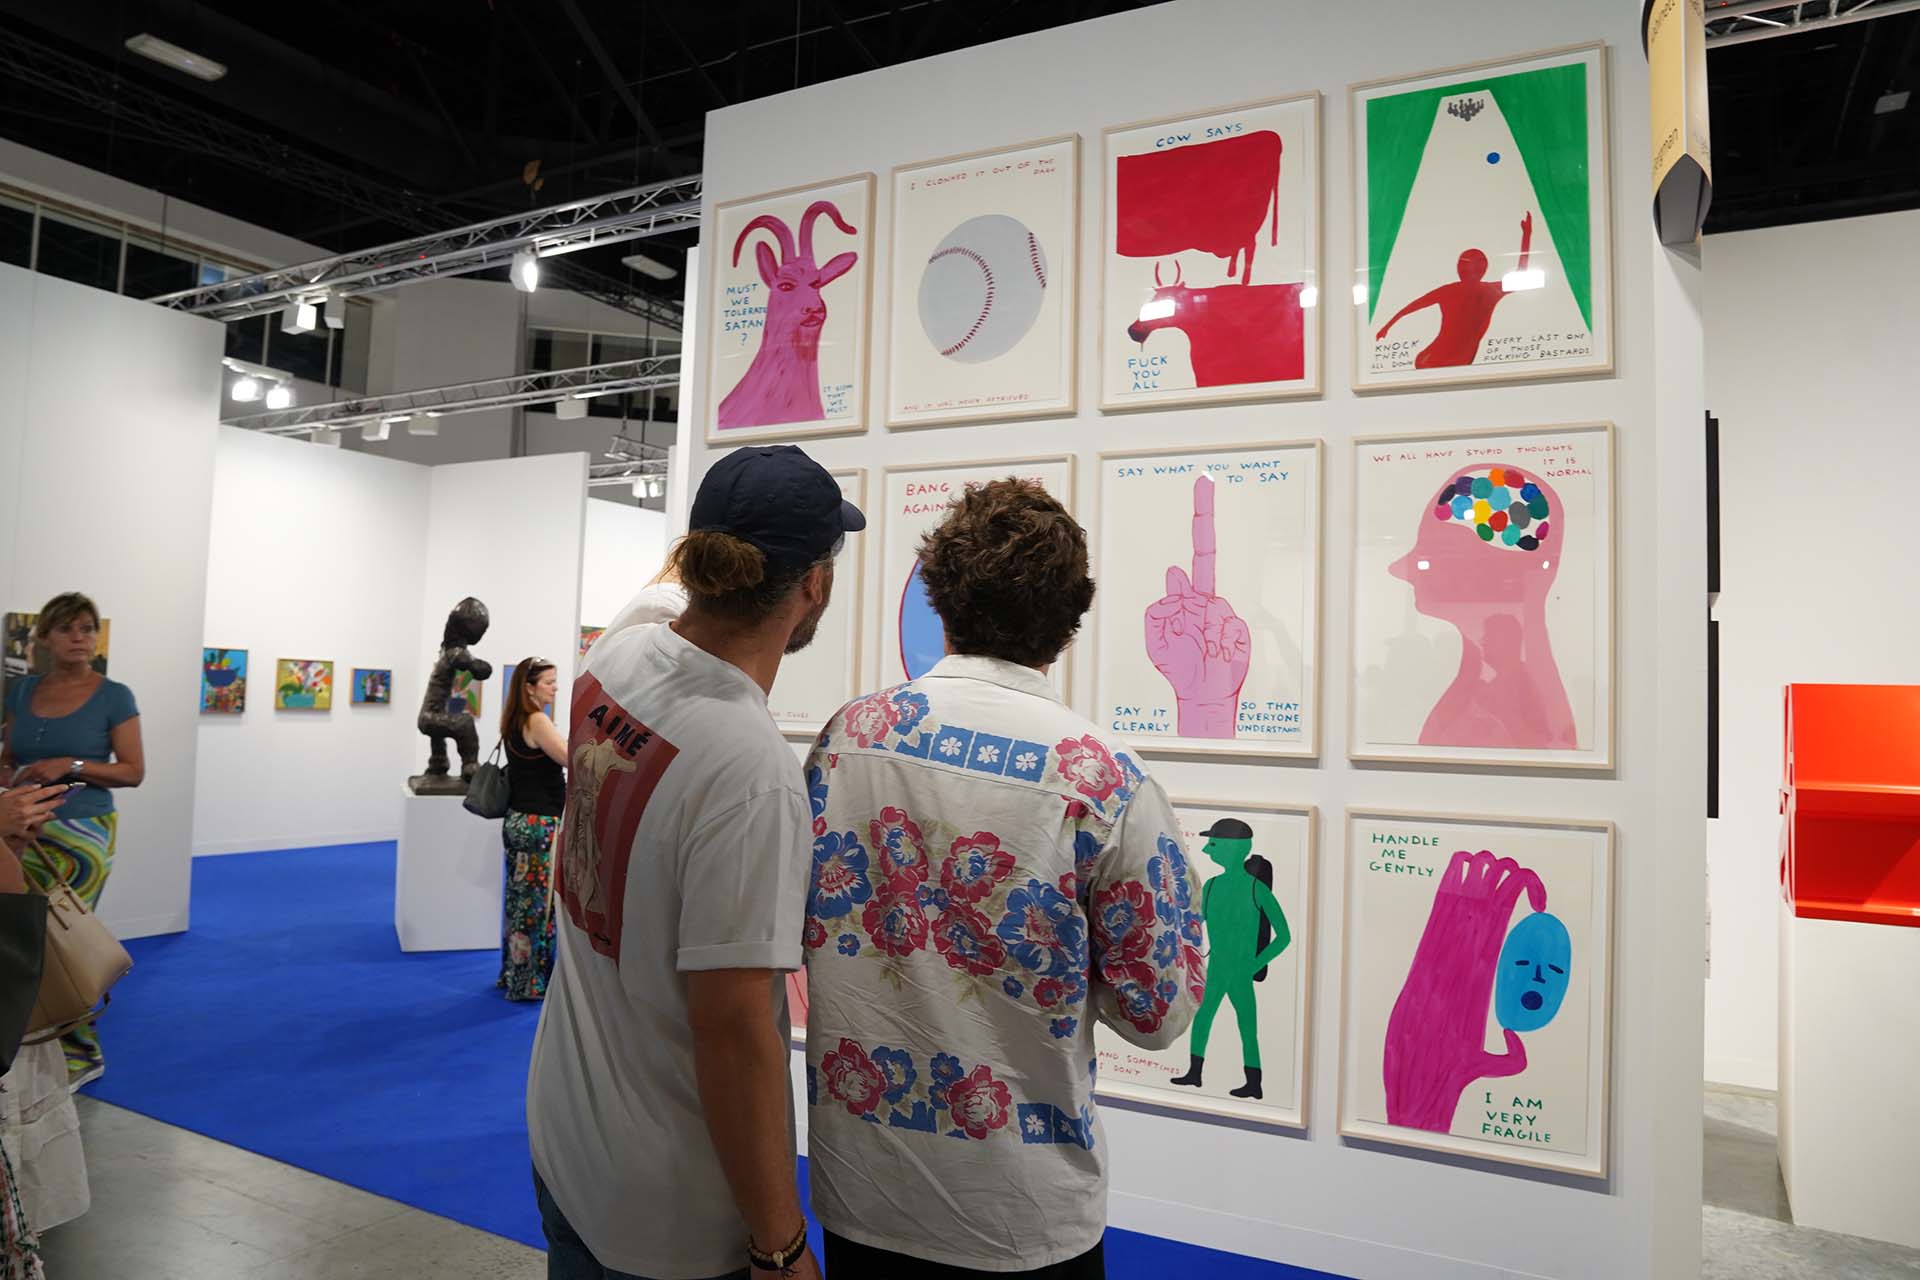 “Galleries”, el sector más importante de Art Basel, presenta al público 212 expositores